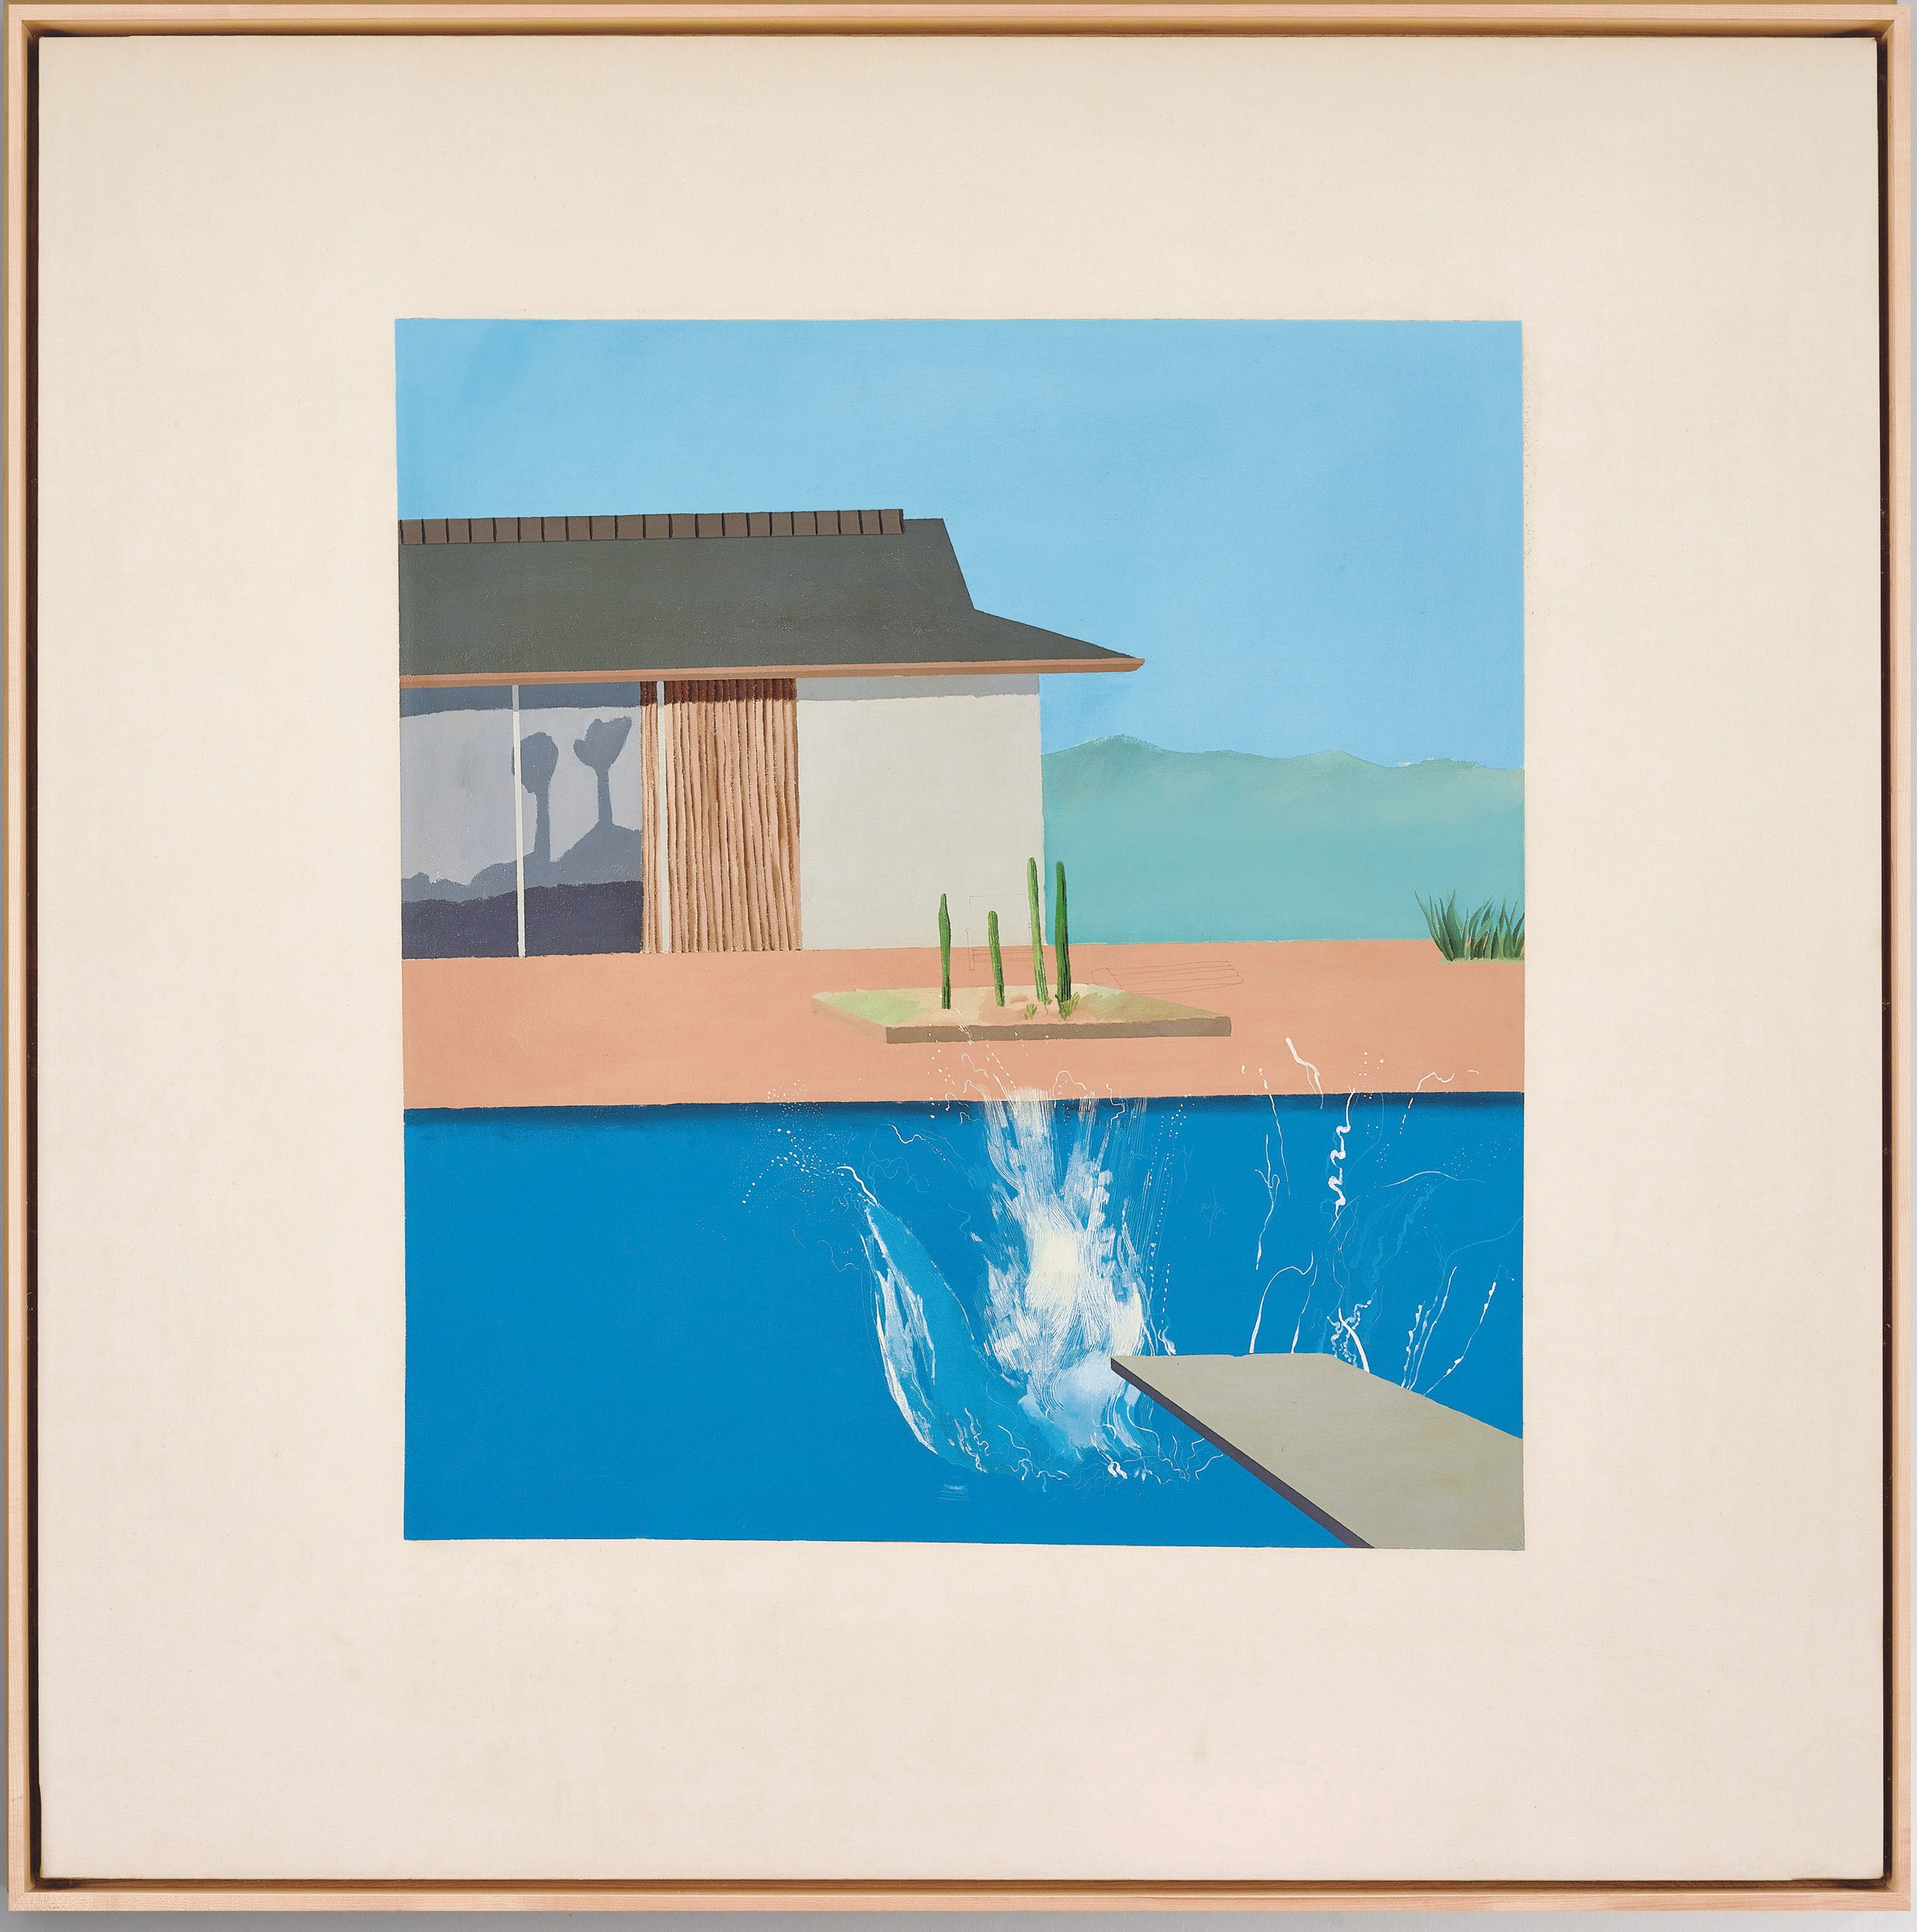 David-Hockney-The-Splash-1966-hi-res-in-situ.jpg